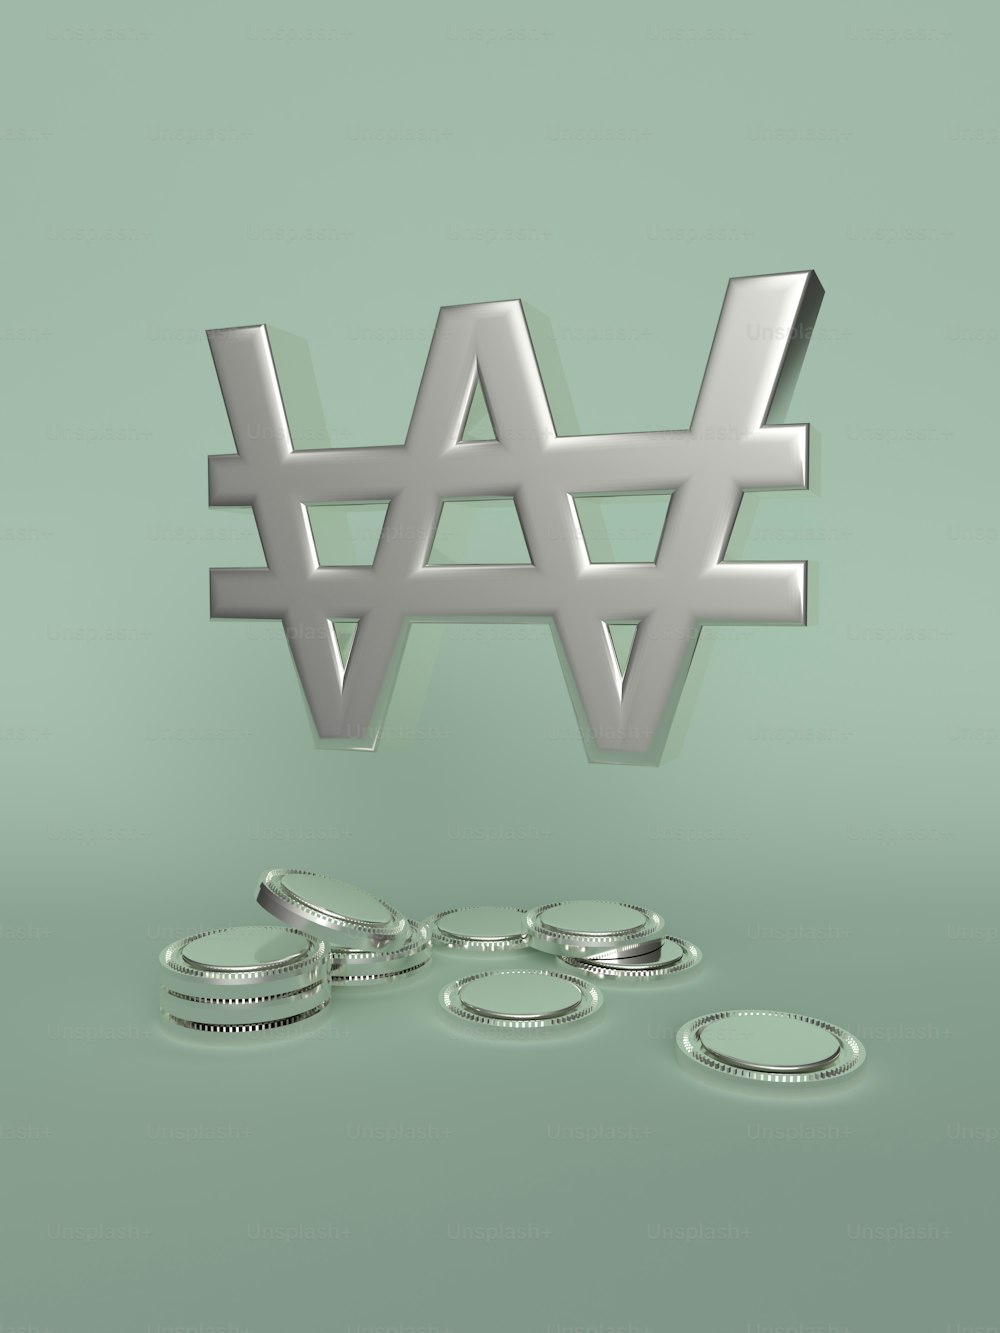 eine 3D-Darstellung des Wortes W und einiger Münzen